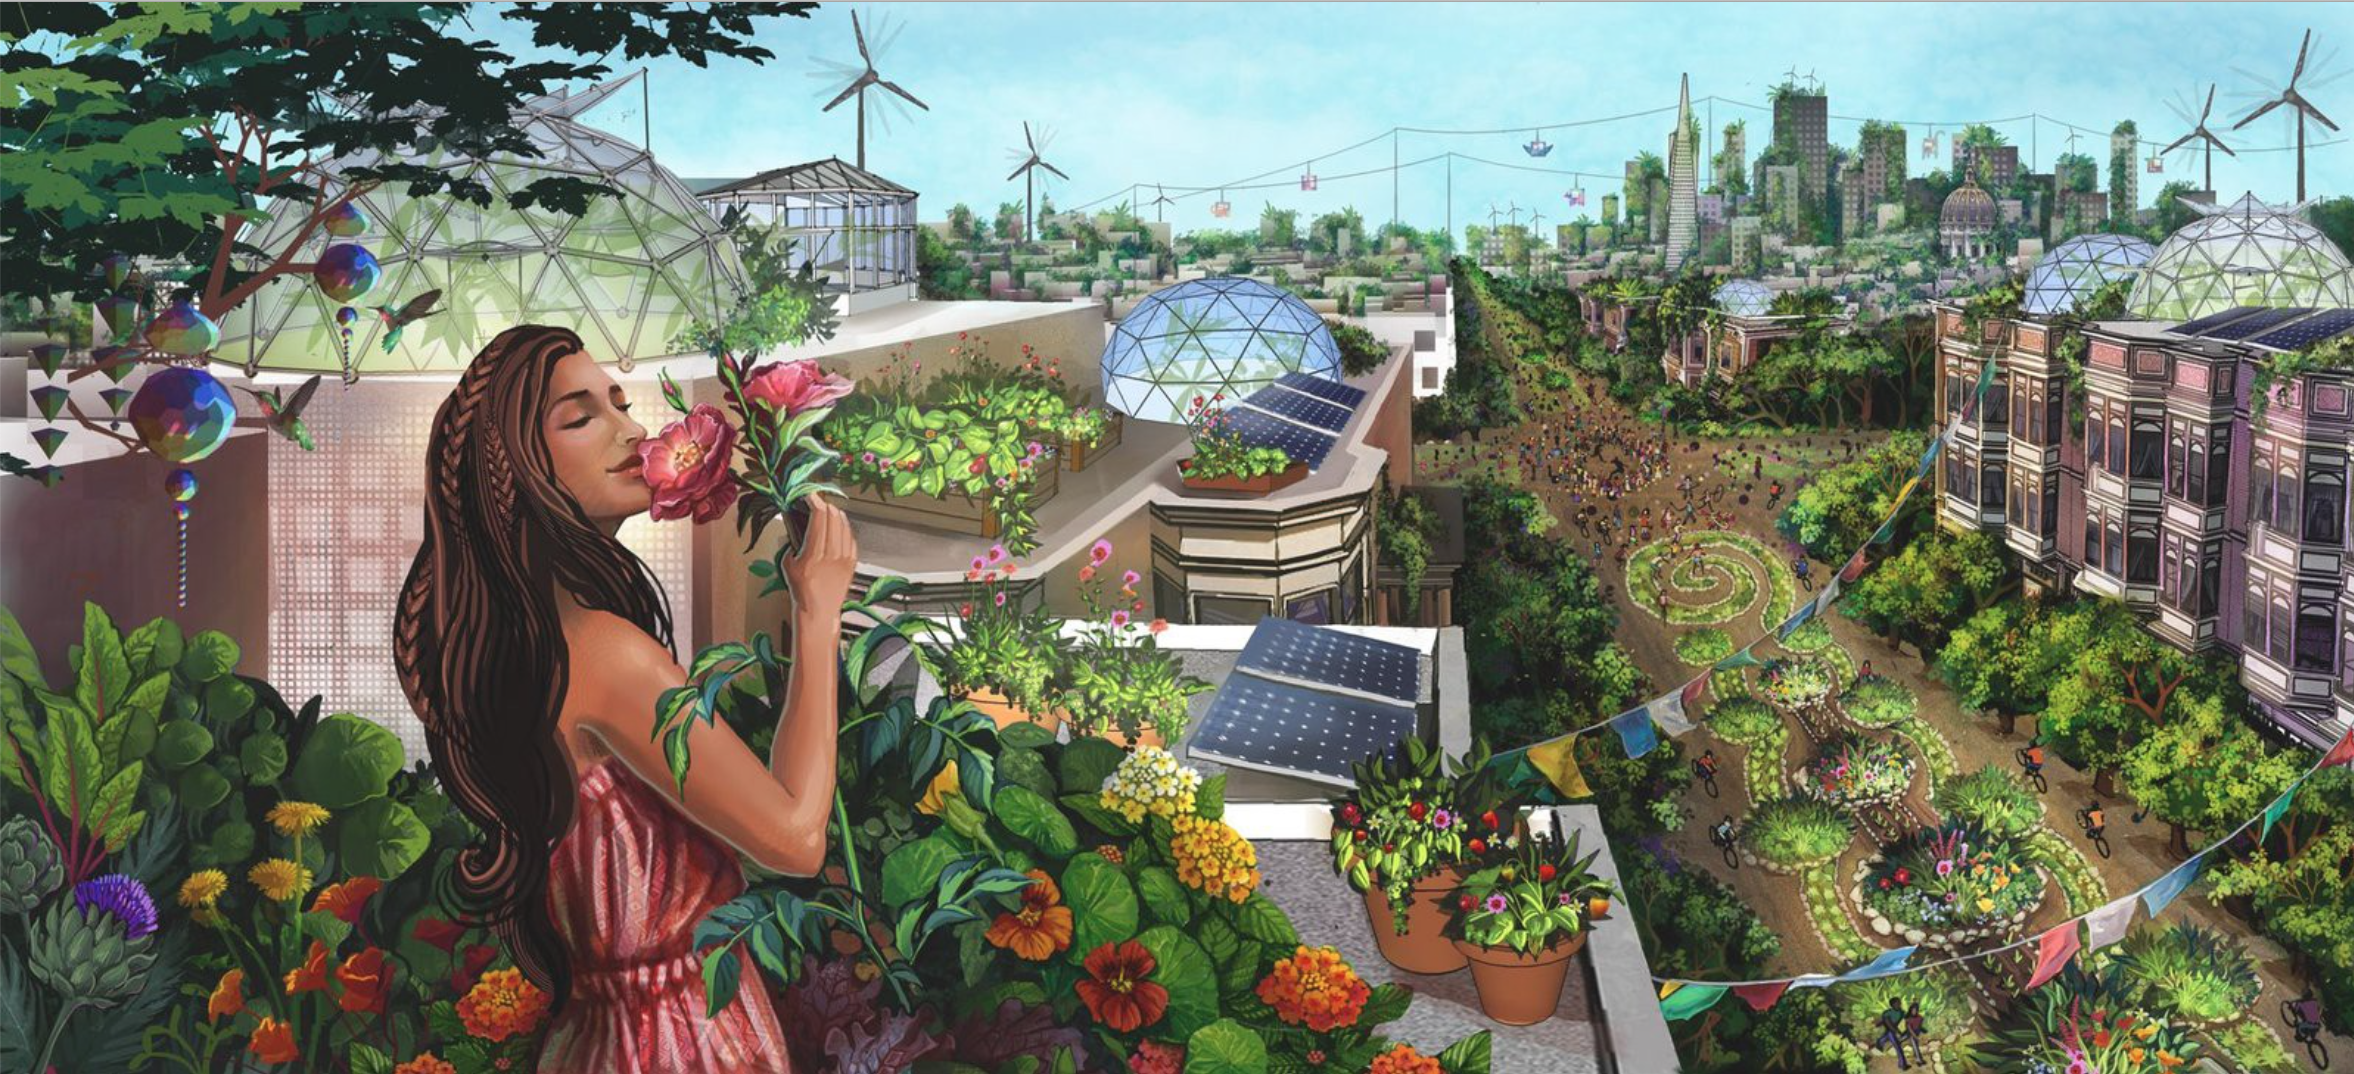 Solarpunk - Sustainable & Desirable Futures 